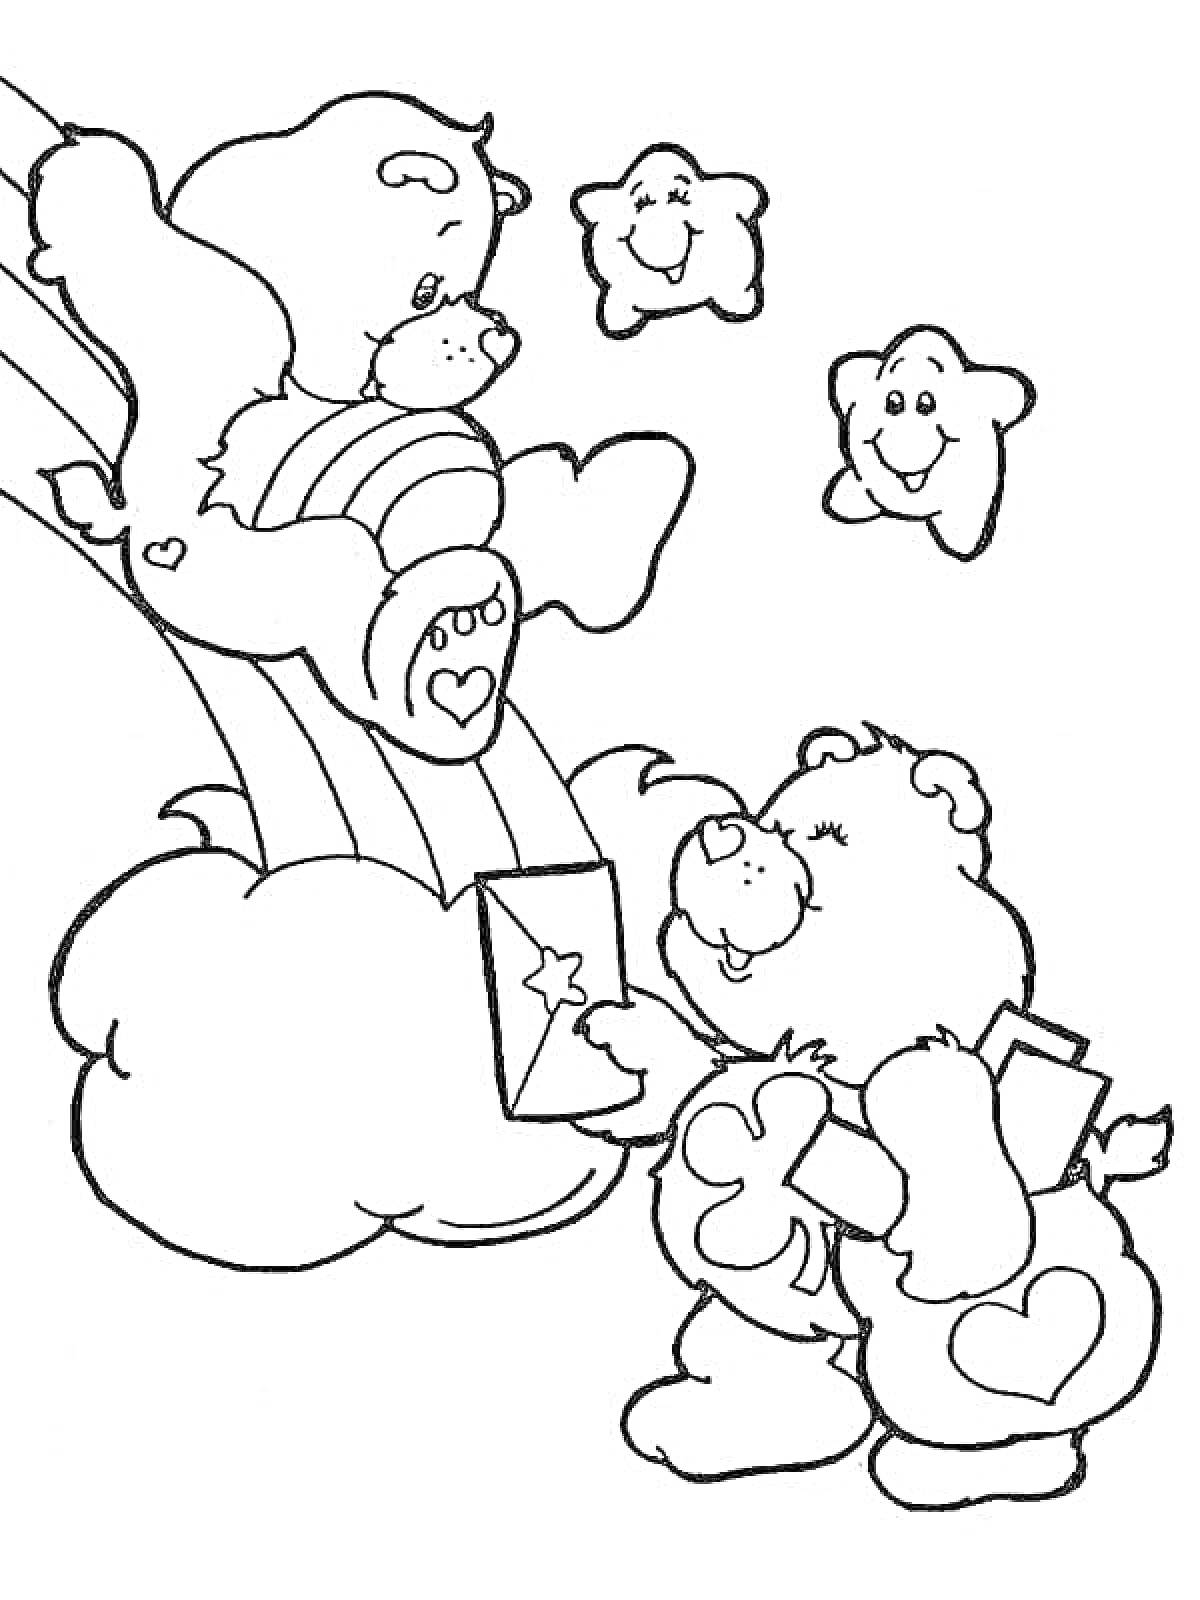 Раскраска Два заботливых мишки, один из которых держит конверт под звездами с улыбками, на фоне радуги и облаков